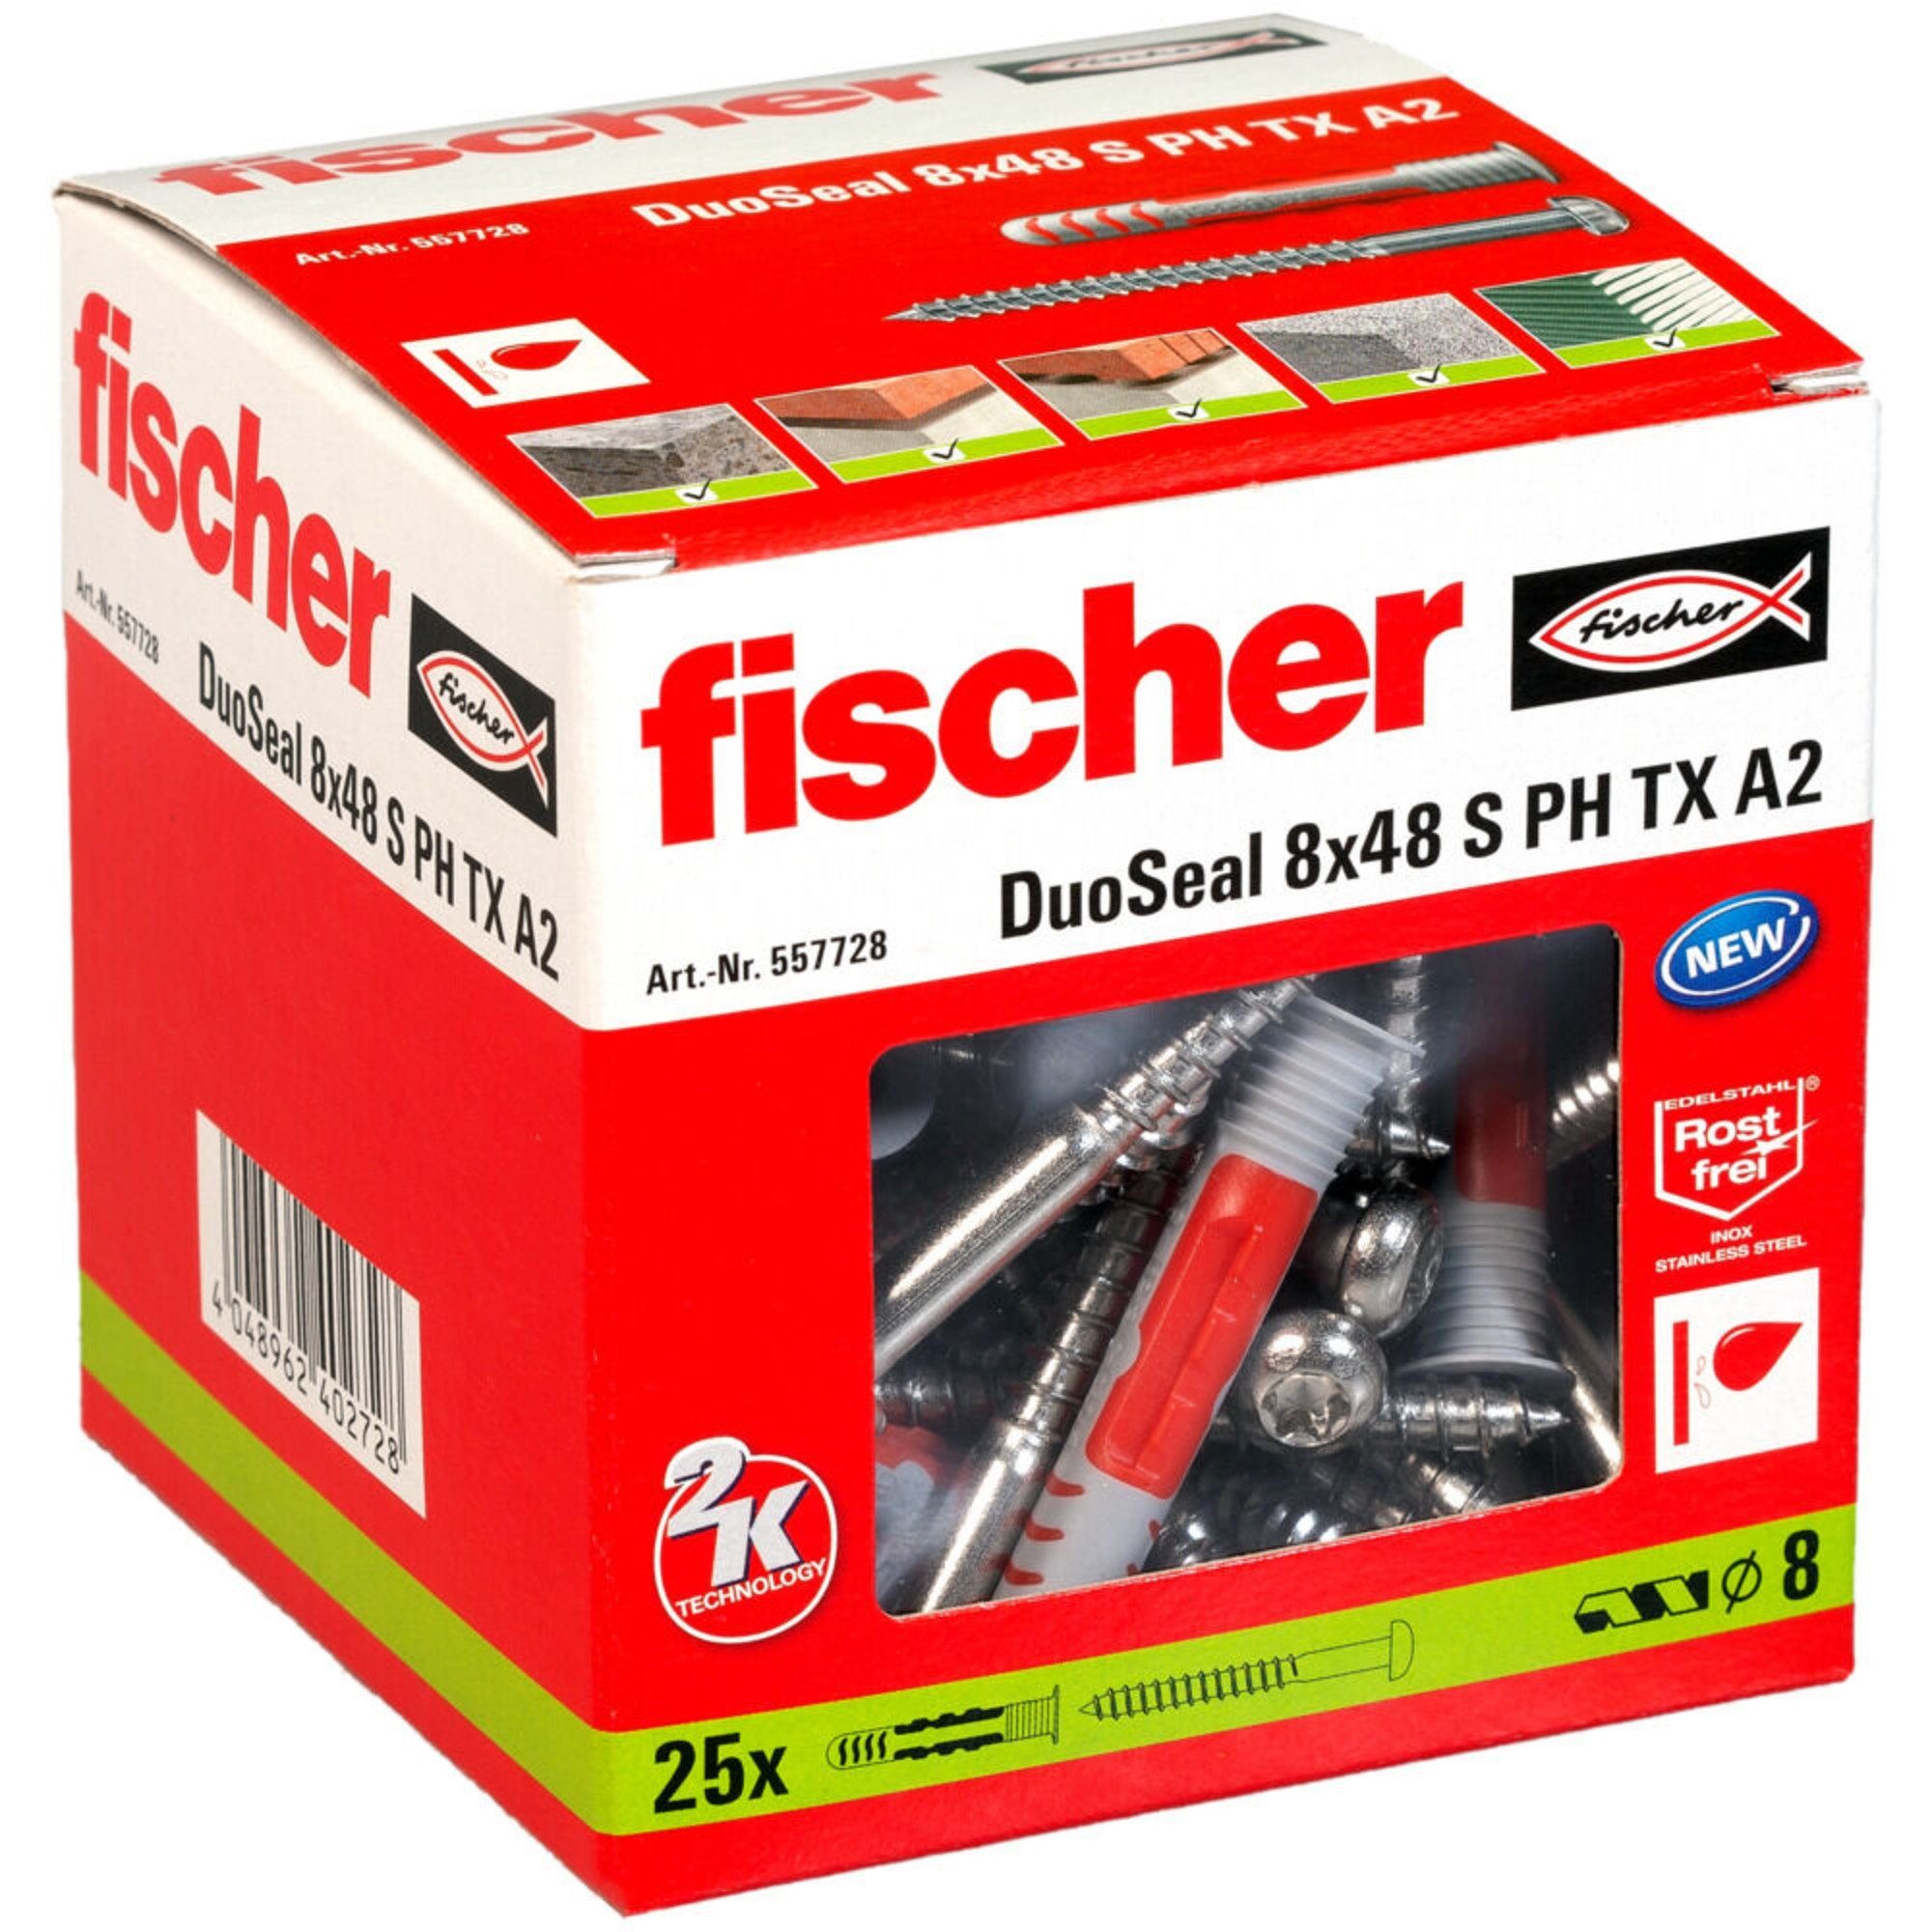 Dübel A2, 8x48 Fischer fischer TX PH S Stück DuoSeal (25 Universaldübel